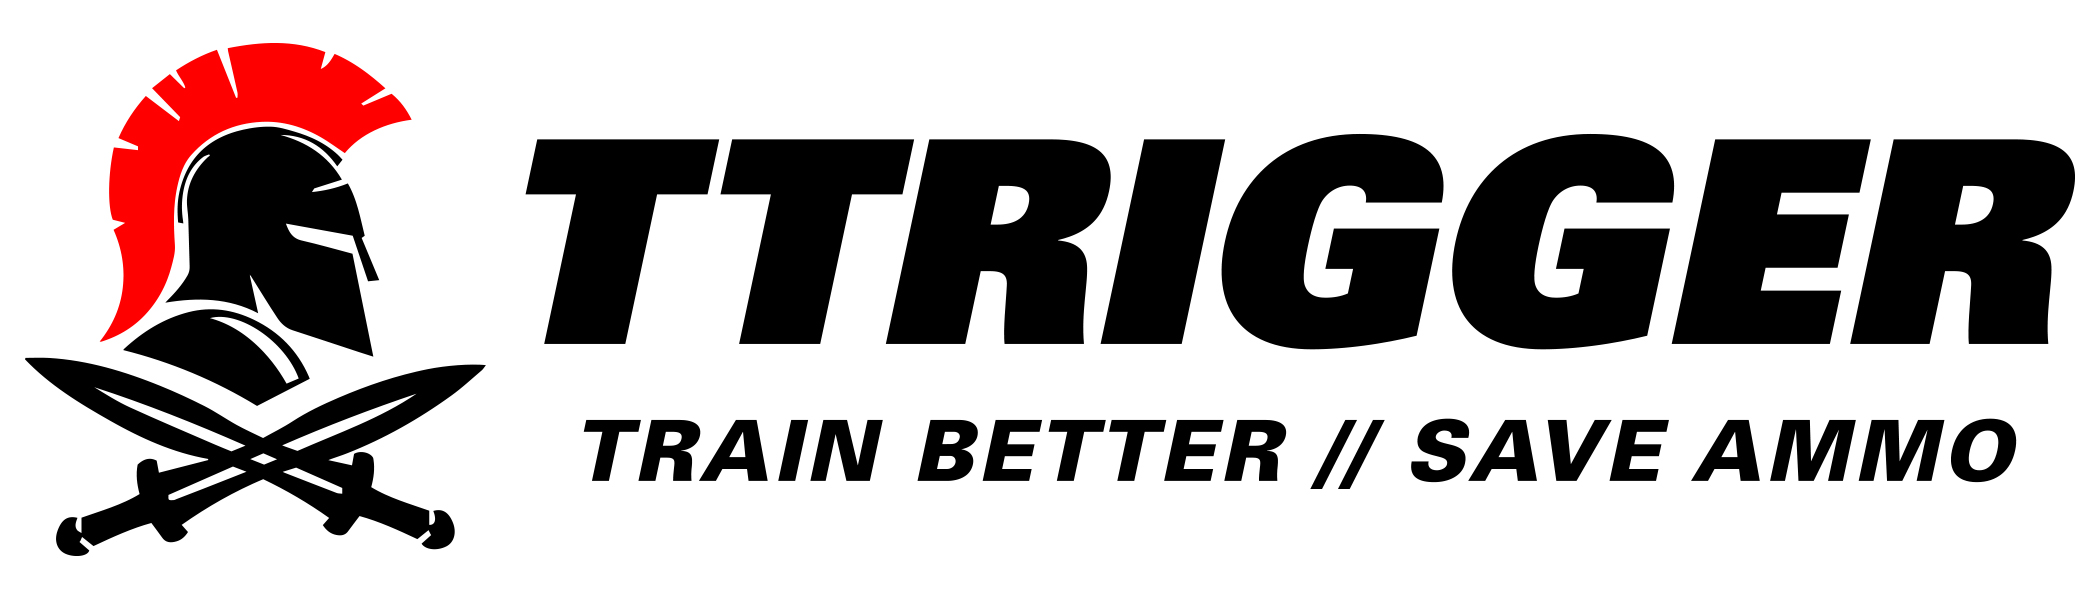 TTrigger Logo.jpg